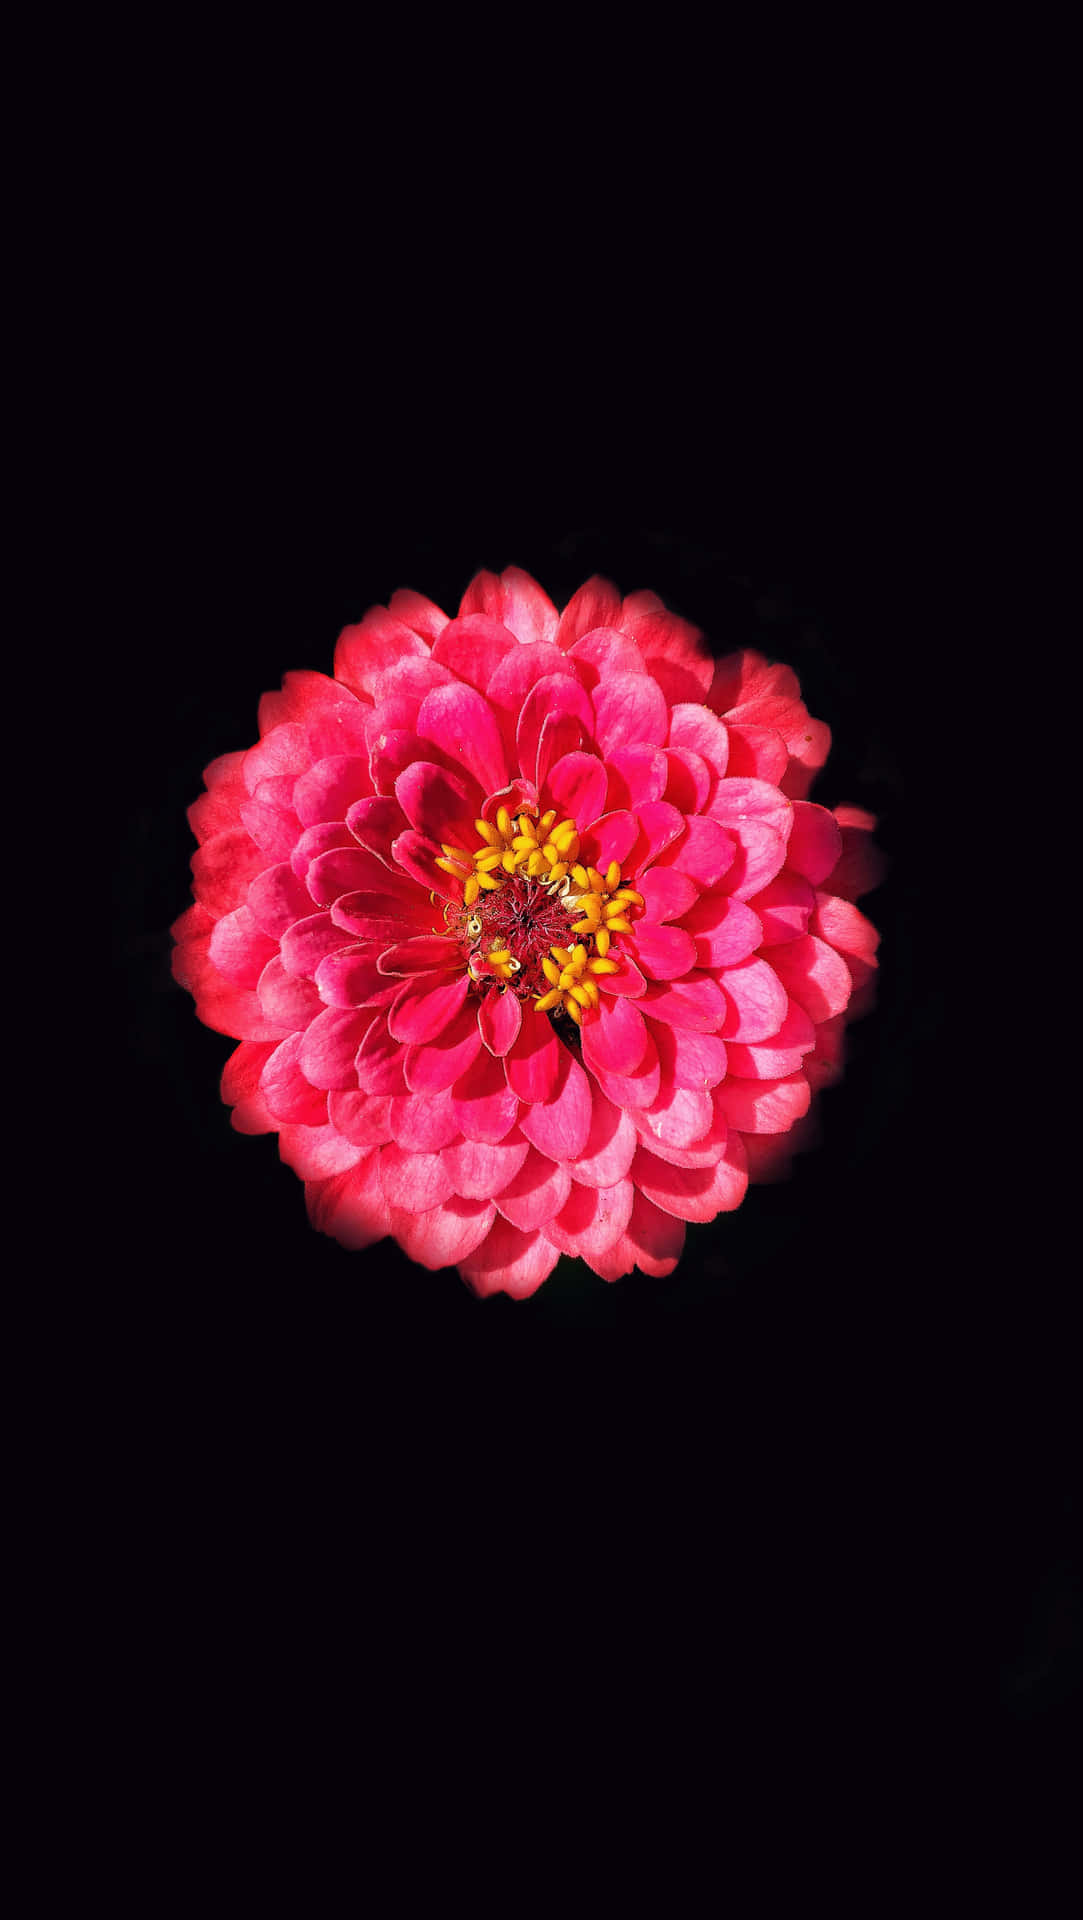 Gängigezinnie Mit Schwarzen Und Pinkfarbenen Blüten. Wallpaper